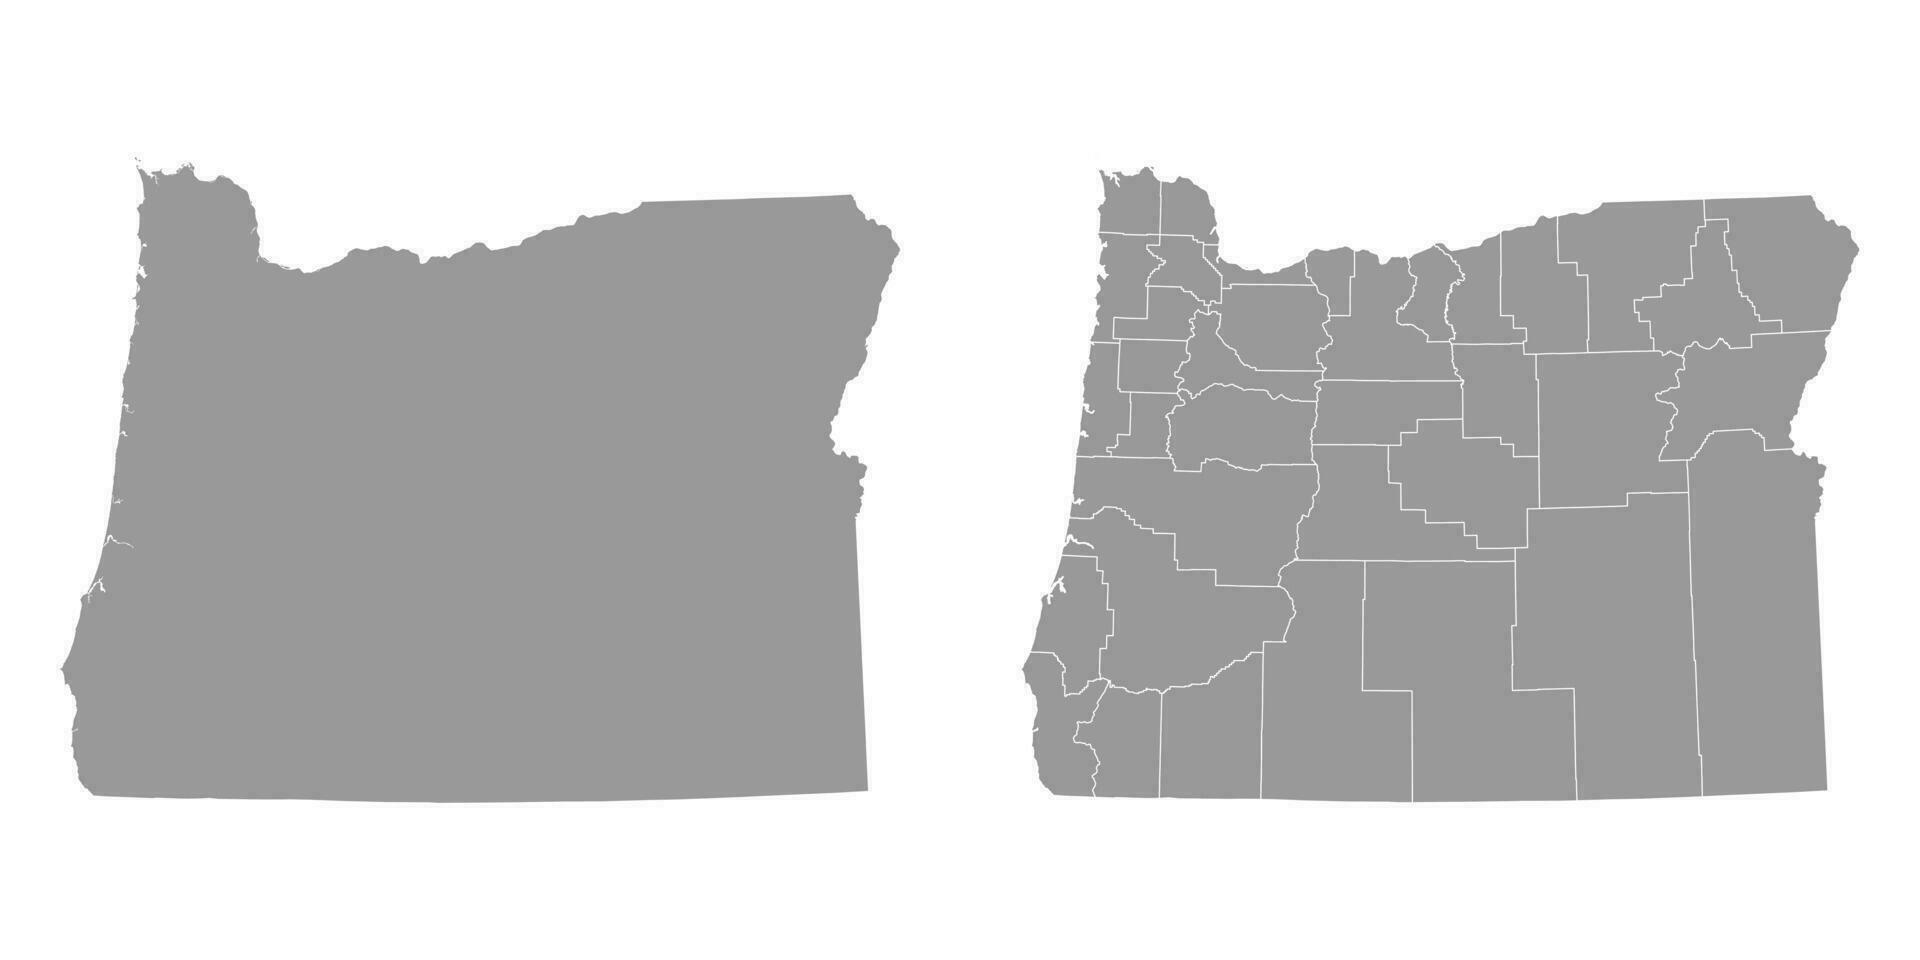 Oregon Estado cinzento mapas. vetor ilustração.